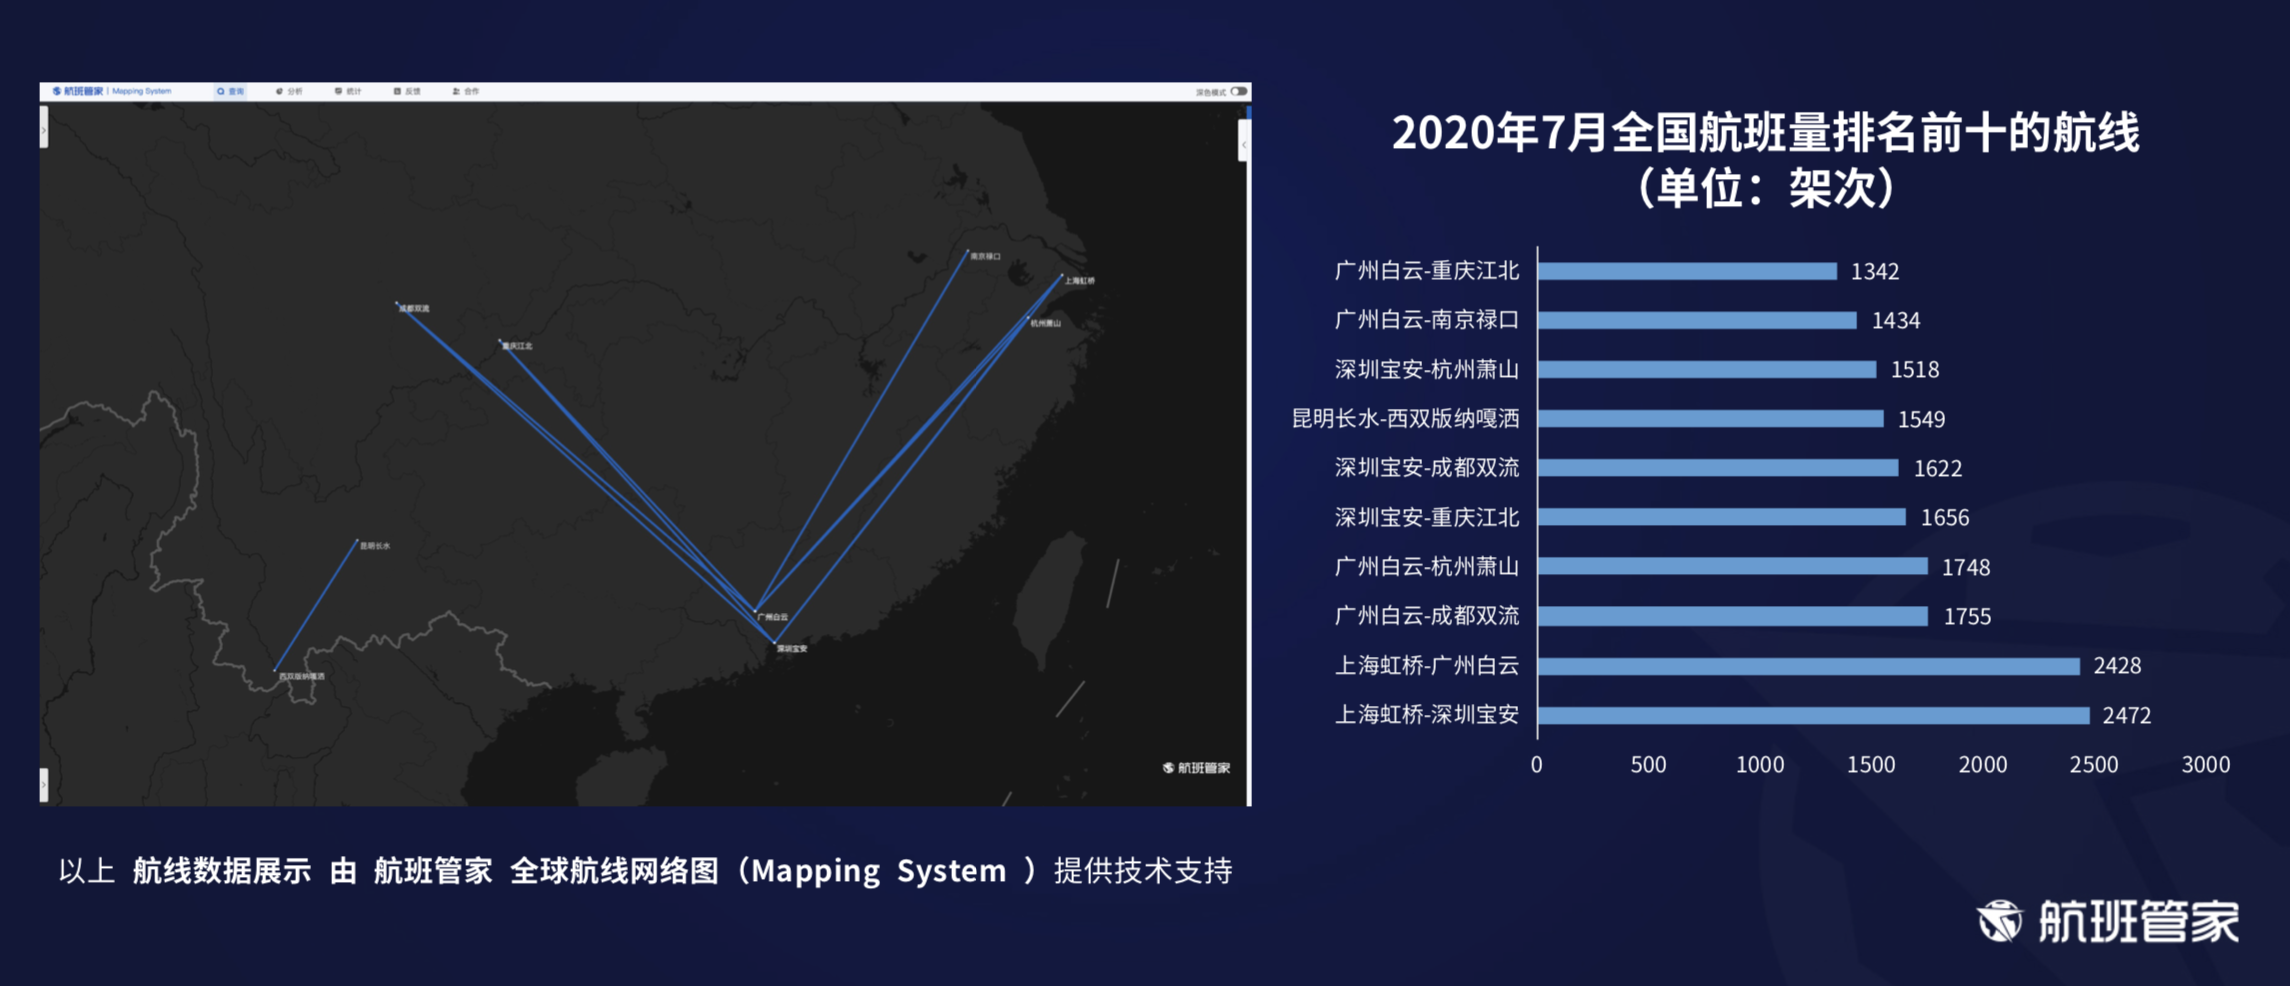 新知图谱, 航班管家发布《7月中国及主要国家民航恢复情况》